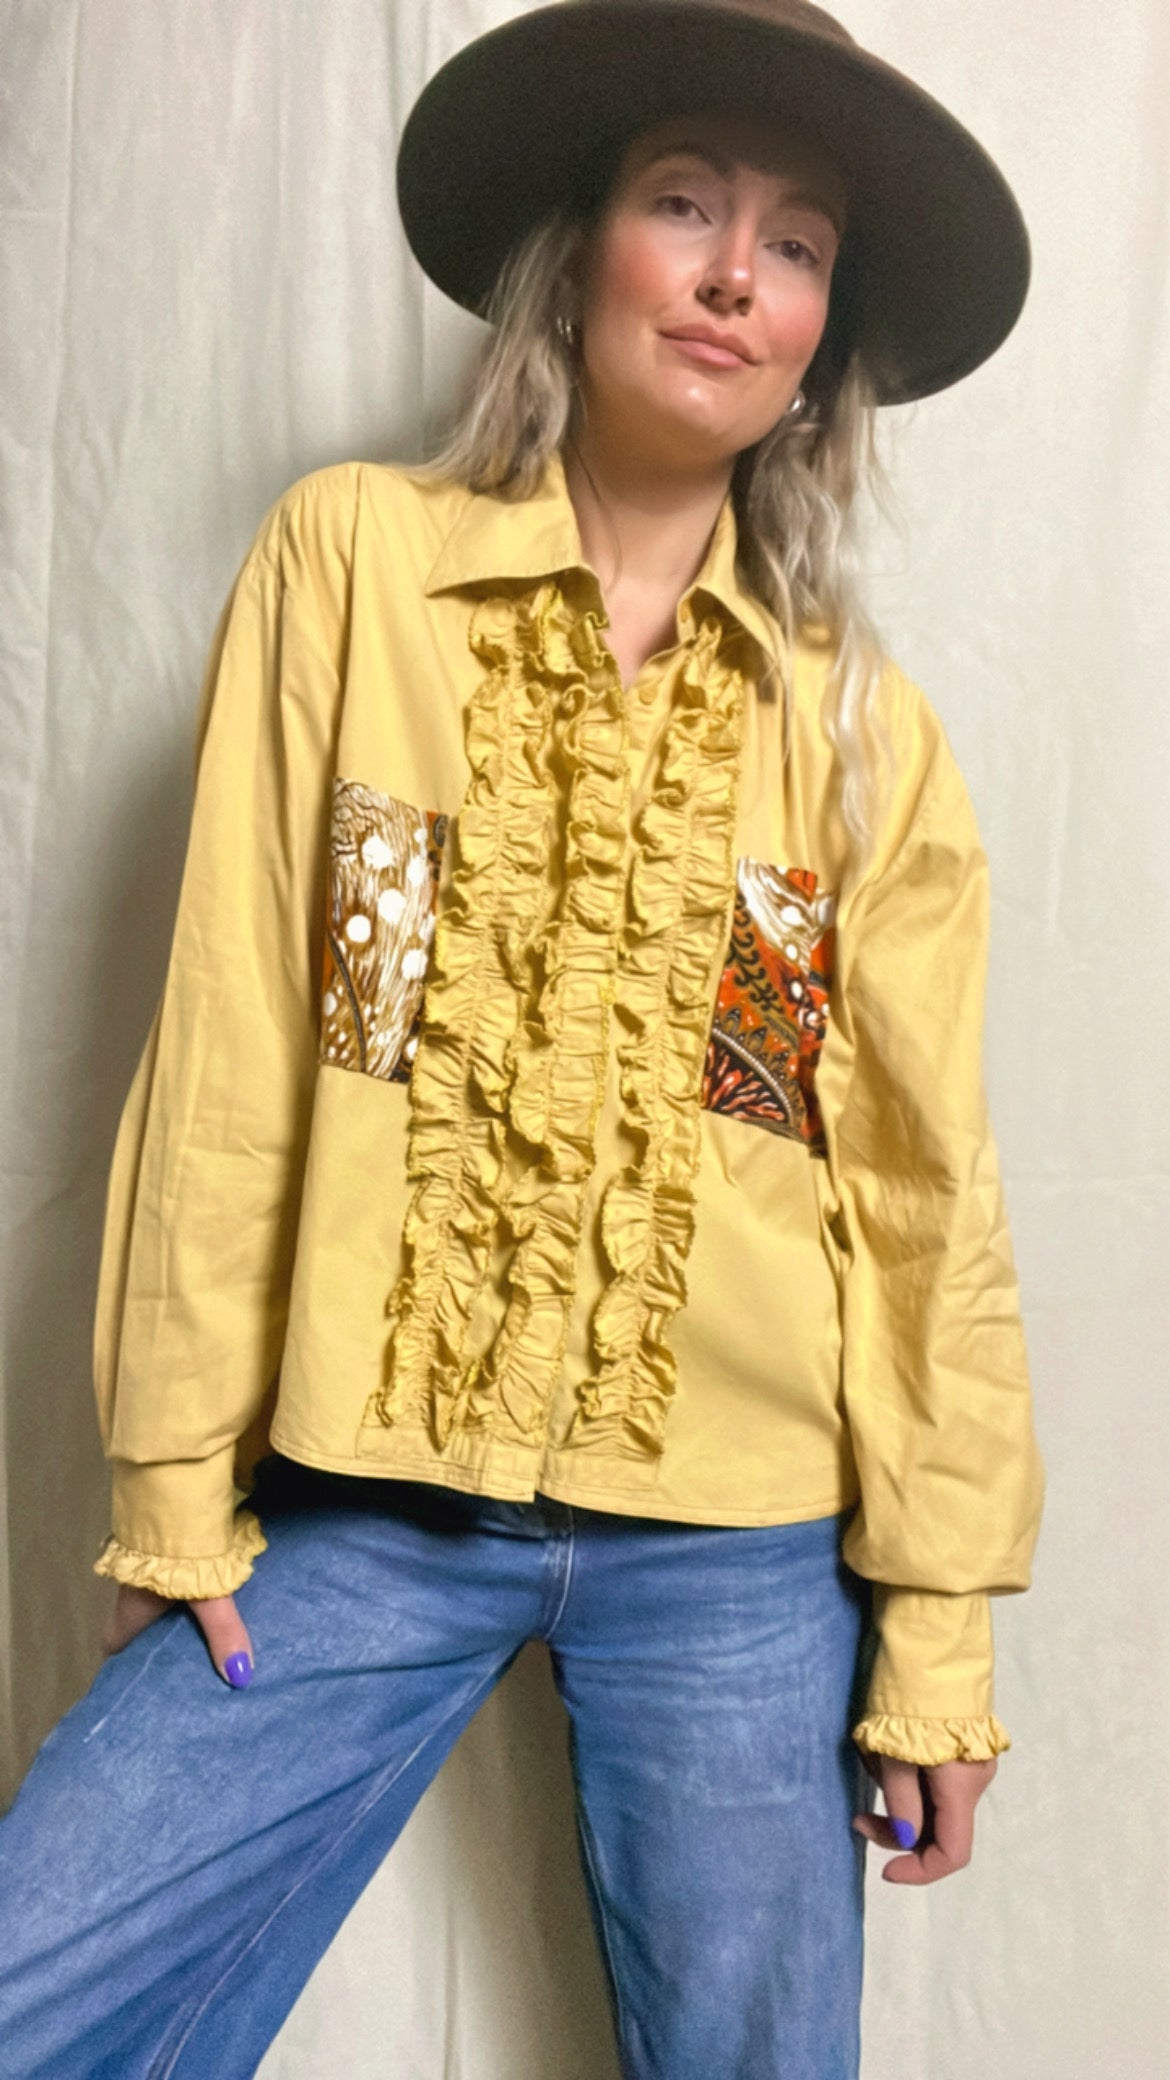 Reworked 70s Matador shirt